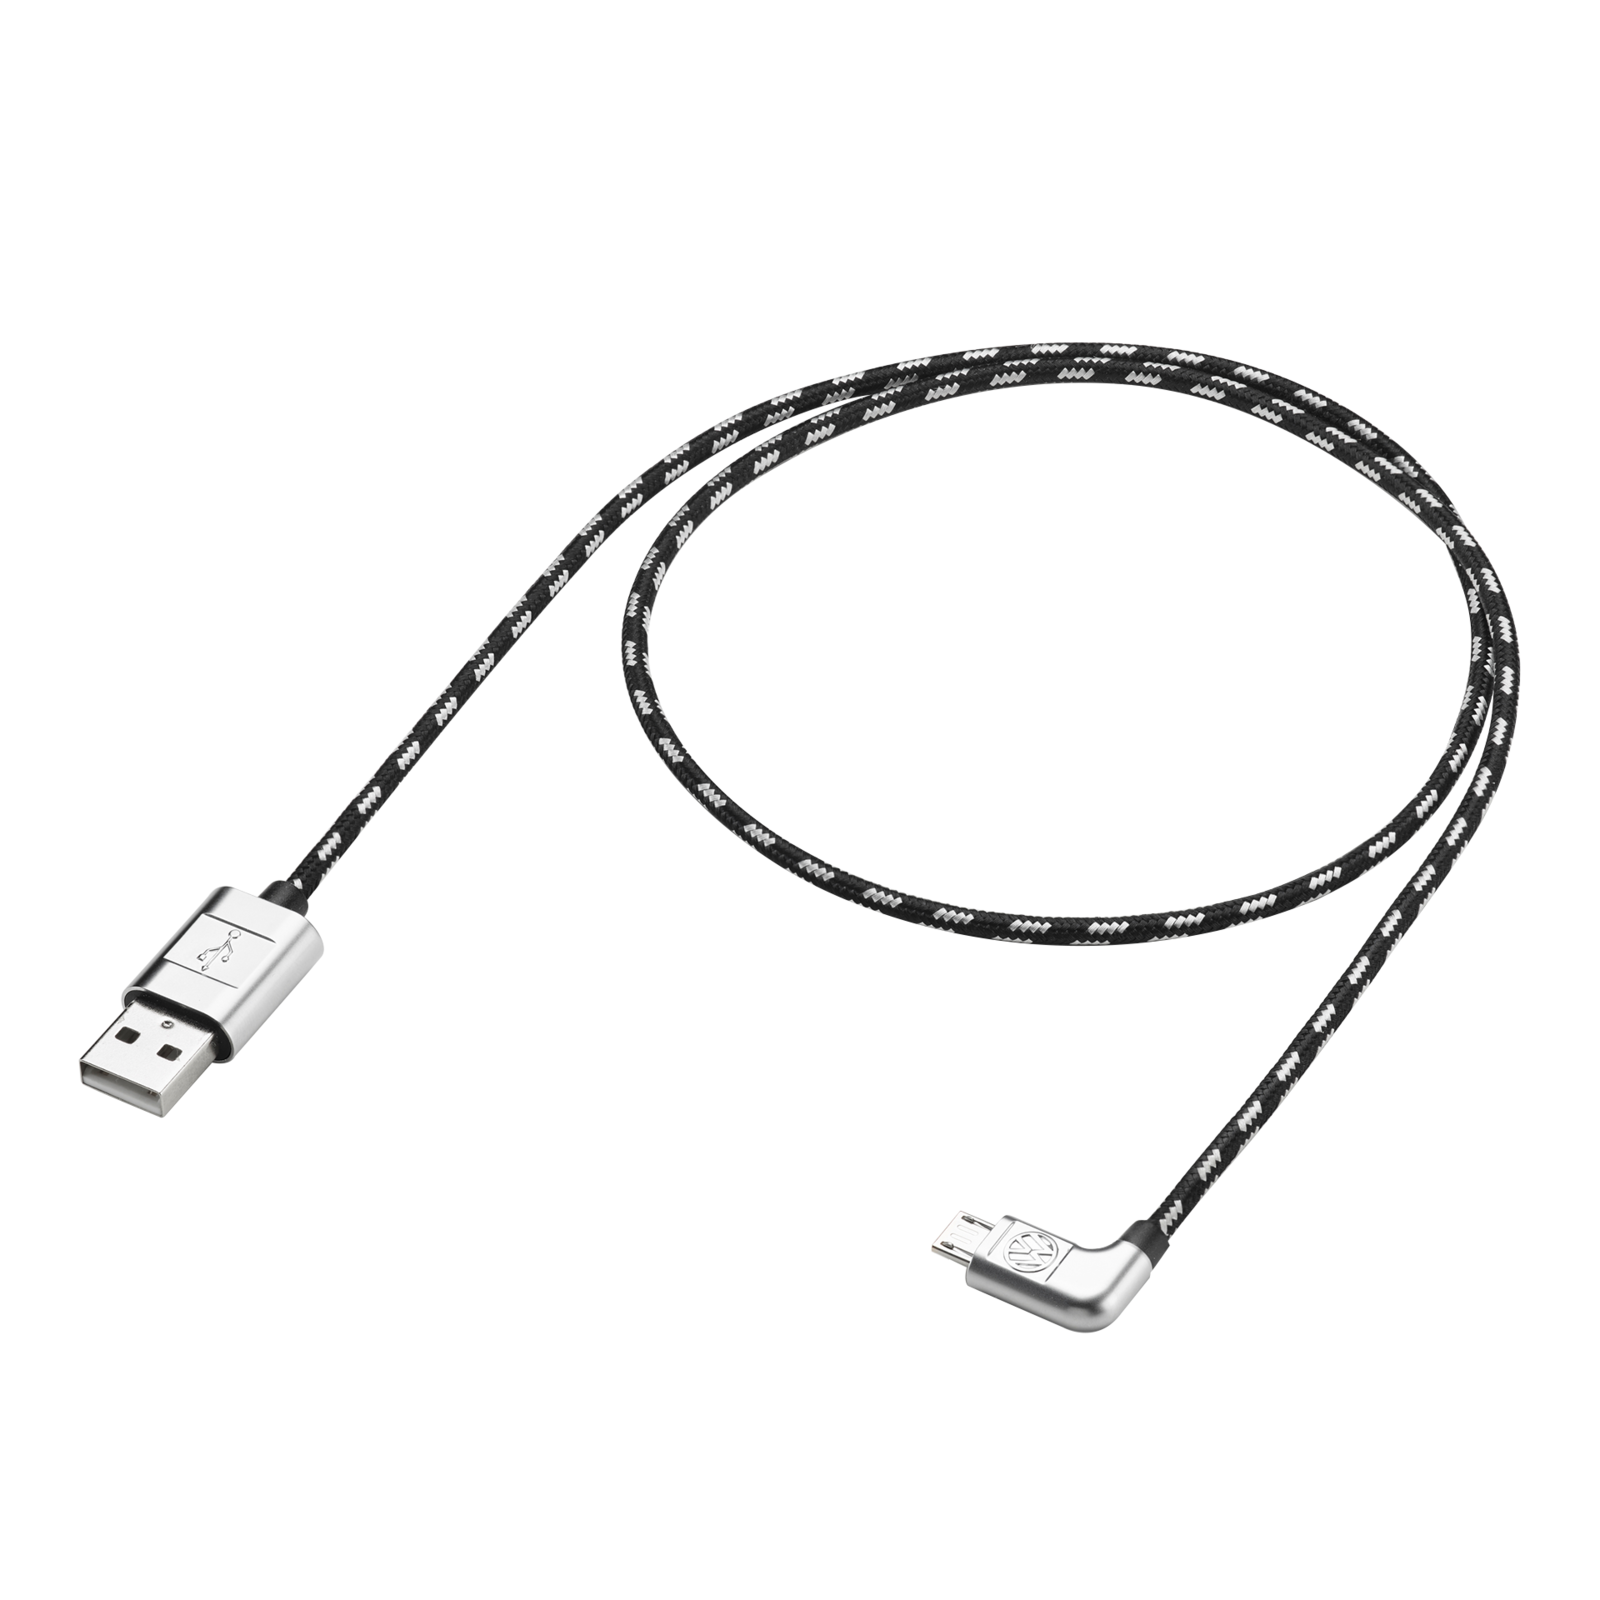 Orig VW Anschlusskabel Ladekabel Datenkabel USB A auf Micro USB 70cm 000051446AF